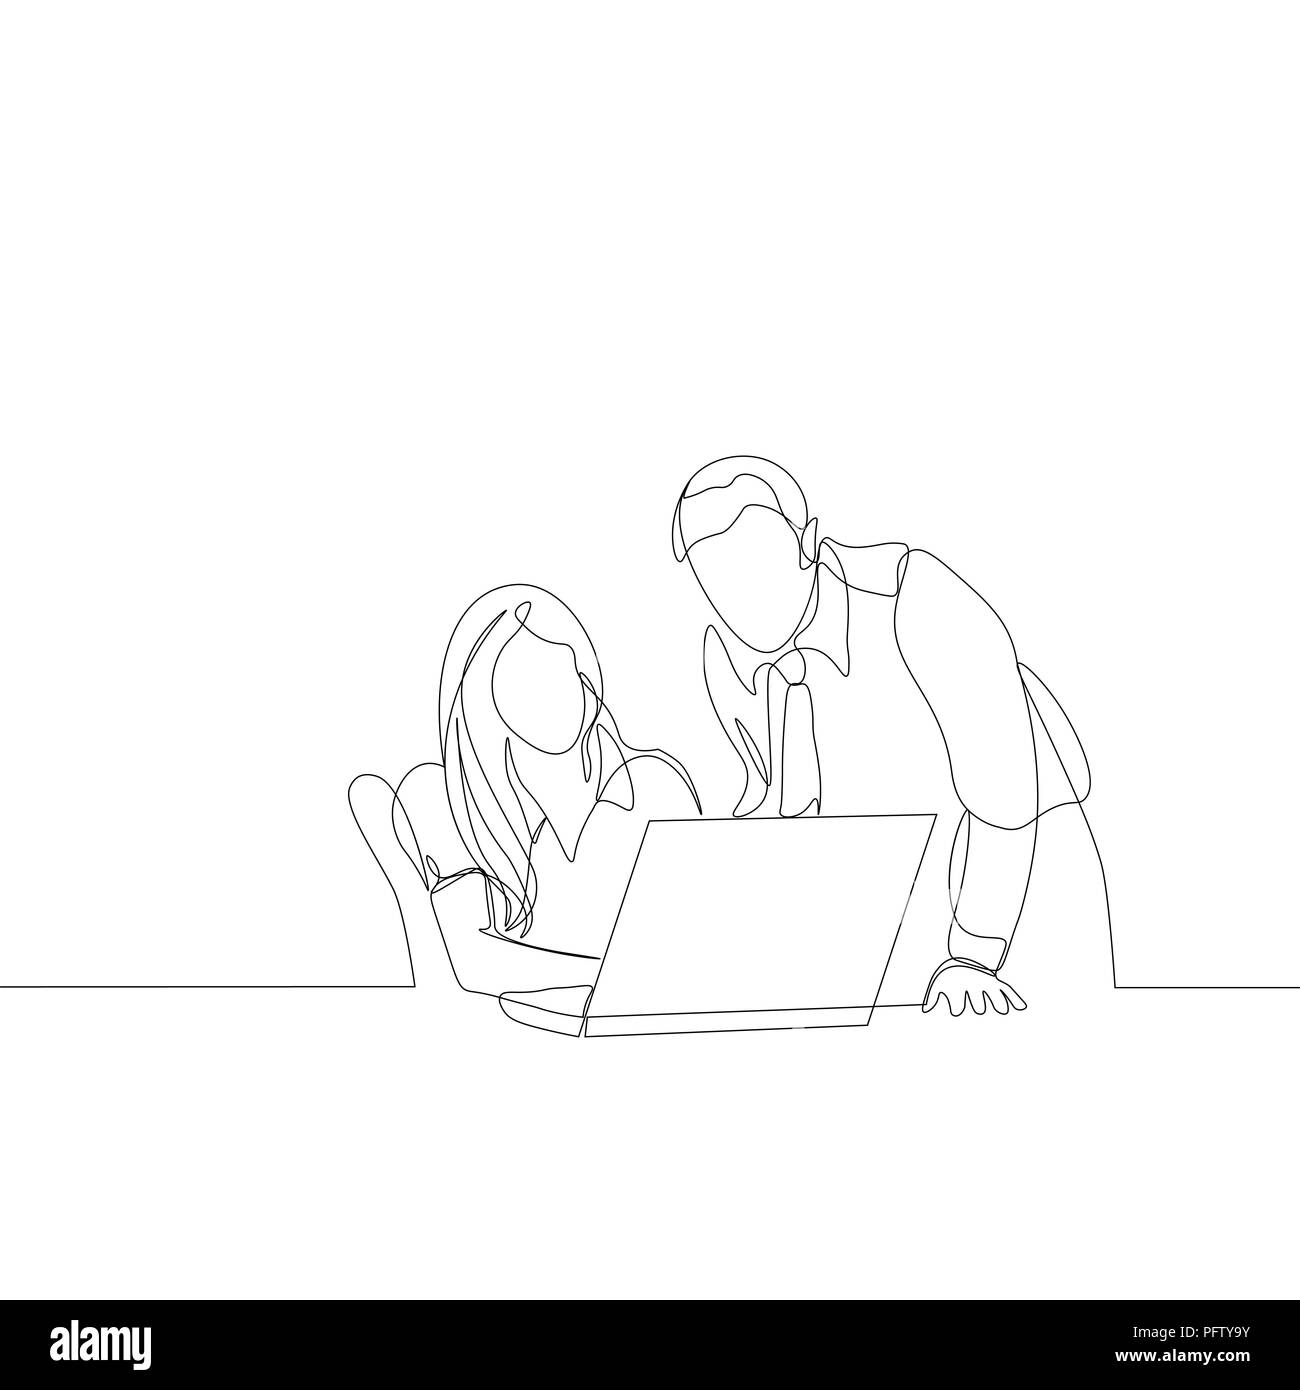 Dessin de ligne continu de réunion d'affaires. L'homme et la femme avec un ordinateur portable Illustration de Vecteur